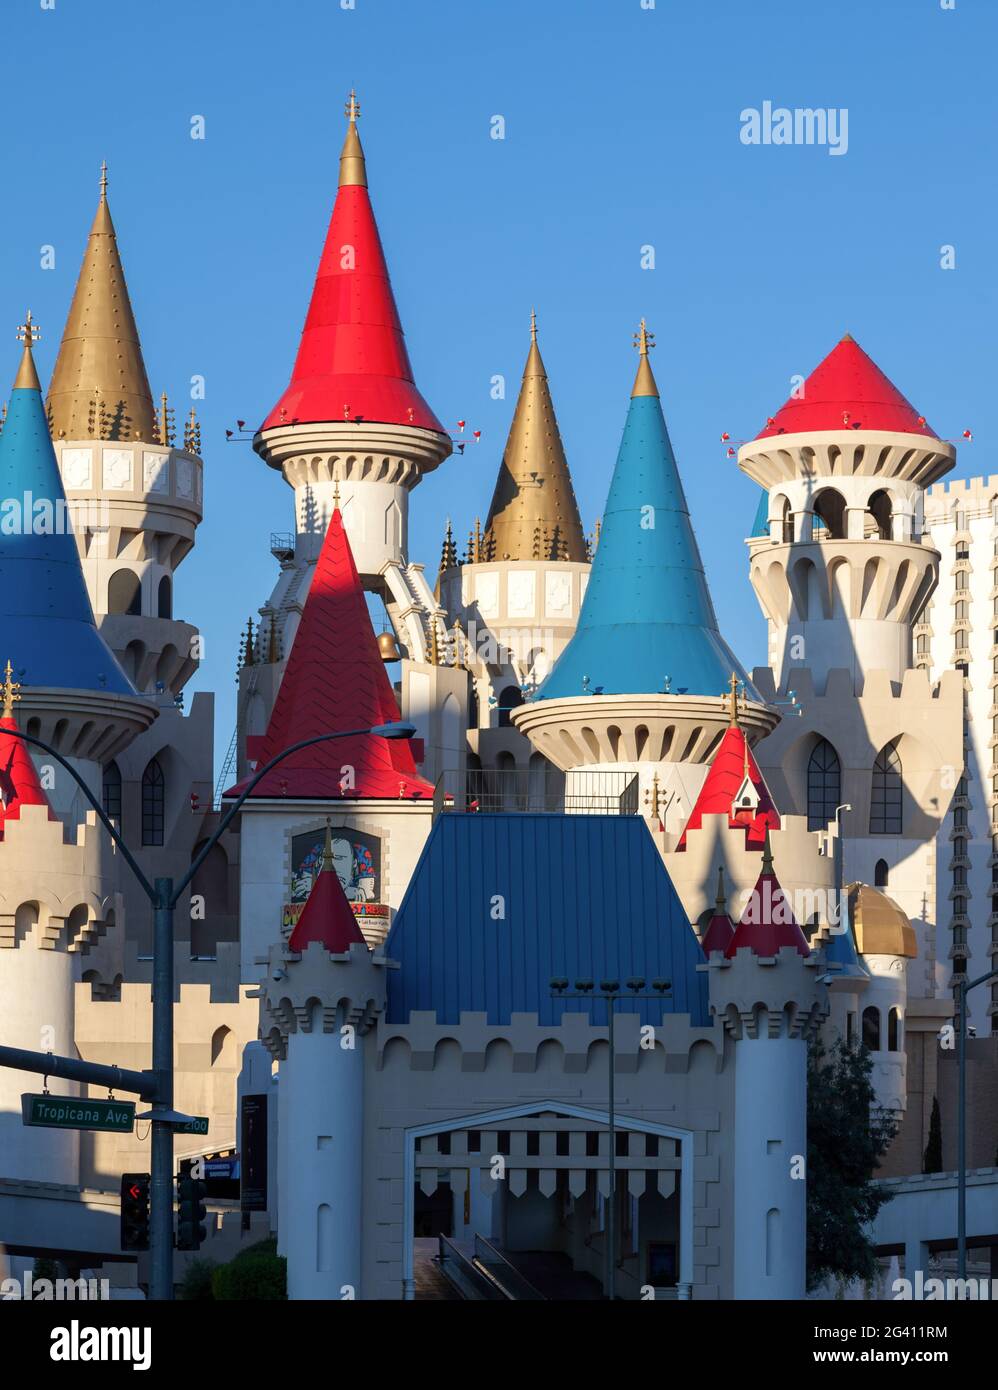 LAS VEGAS, NEVADA/USA - 1 août : Château de Walt Disney à Las Vegas le 1 août, 2011 Banque D'Images